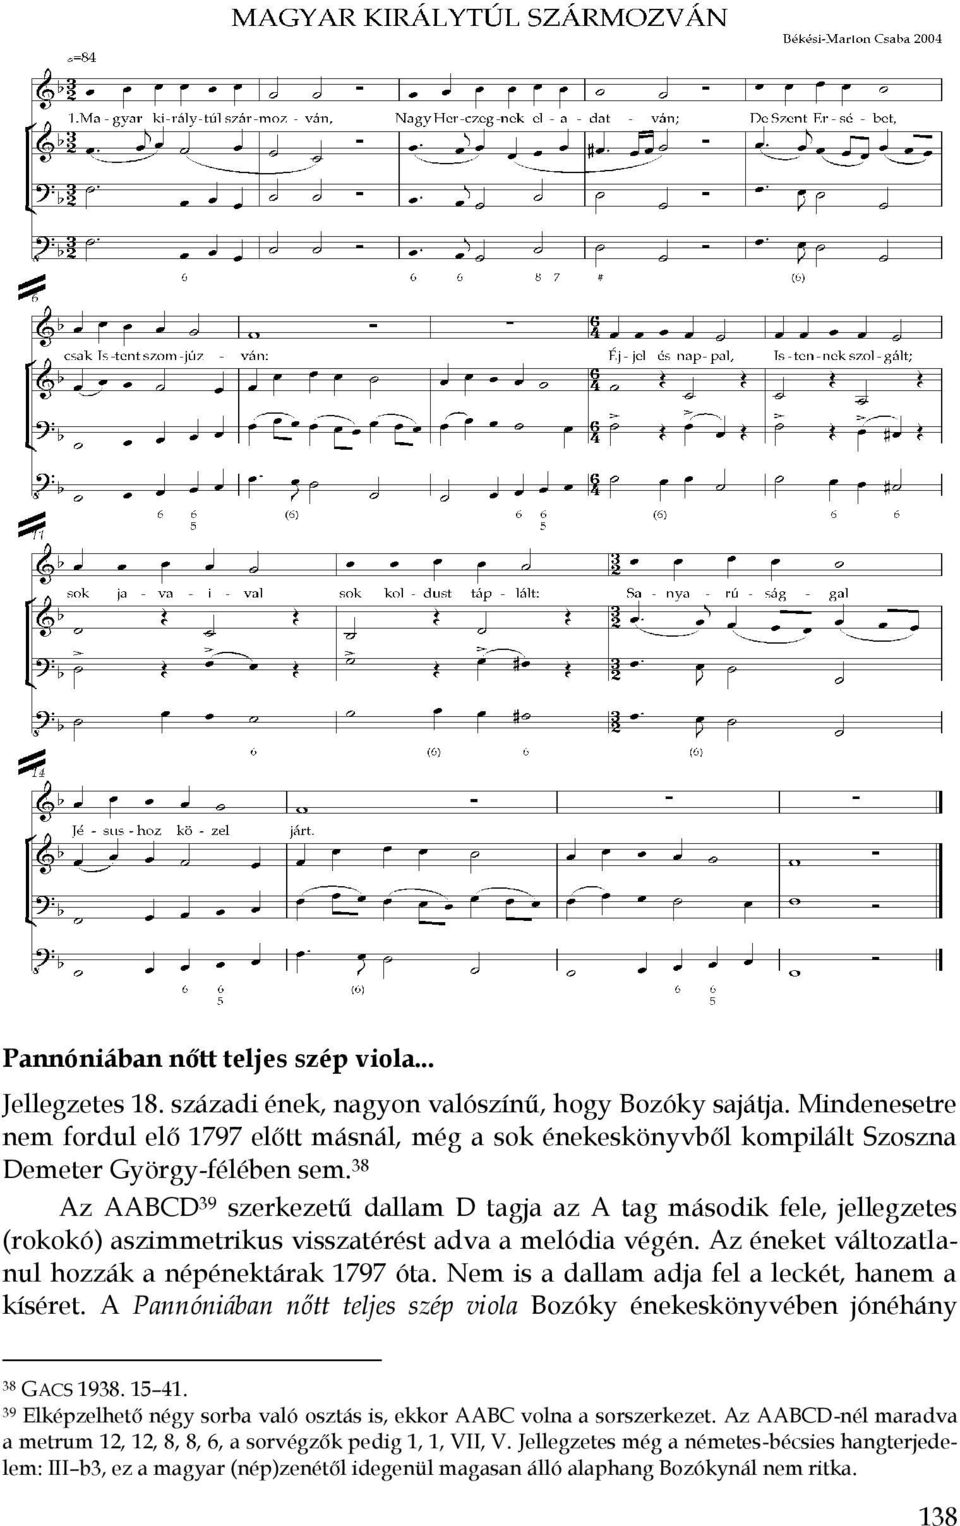 38 Az AABCD 39 szerkezetű dallam D tagja az A tag második fele, jellegzetes (rokokó) aszimmetrikus visszatérést adva a melódia végén. Az éneket változatlanul hozzák a népénektárak 1797 óta.